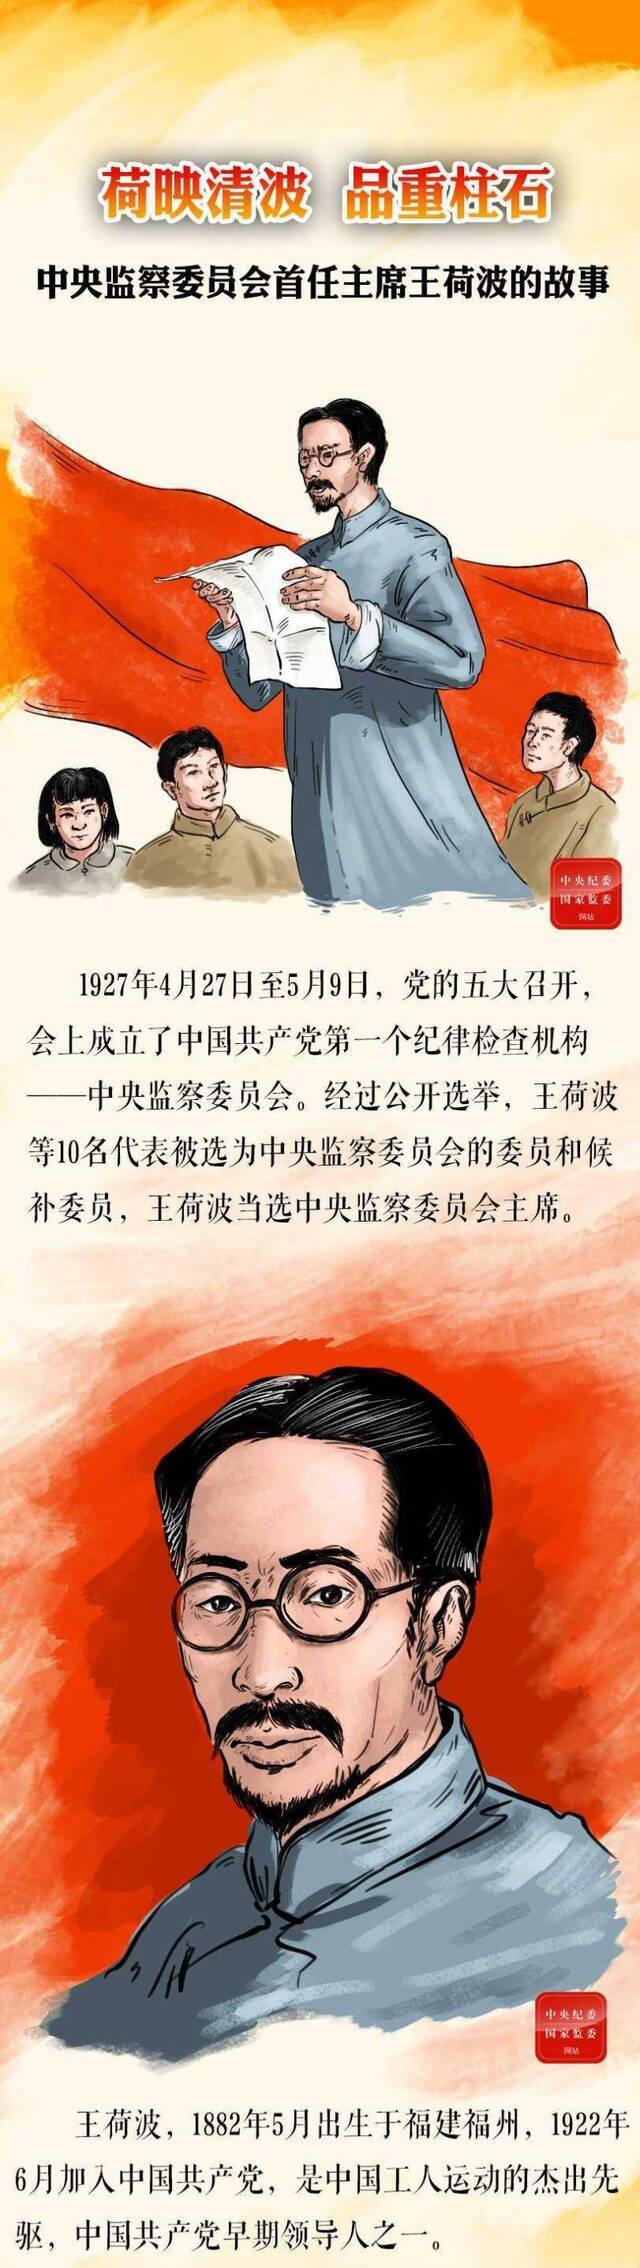 手绘故事  中央监察委员会首任主席王荷波